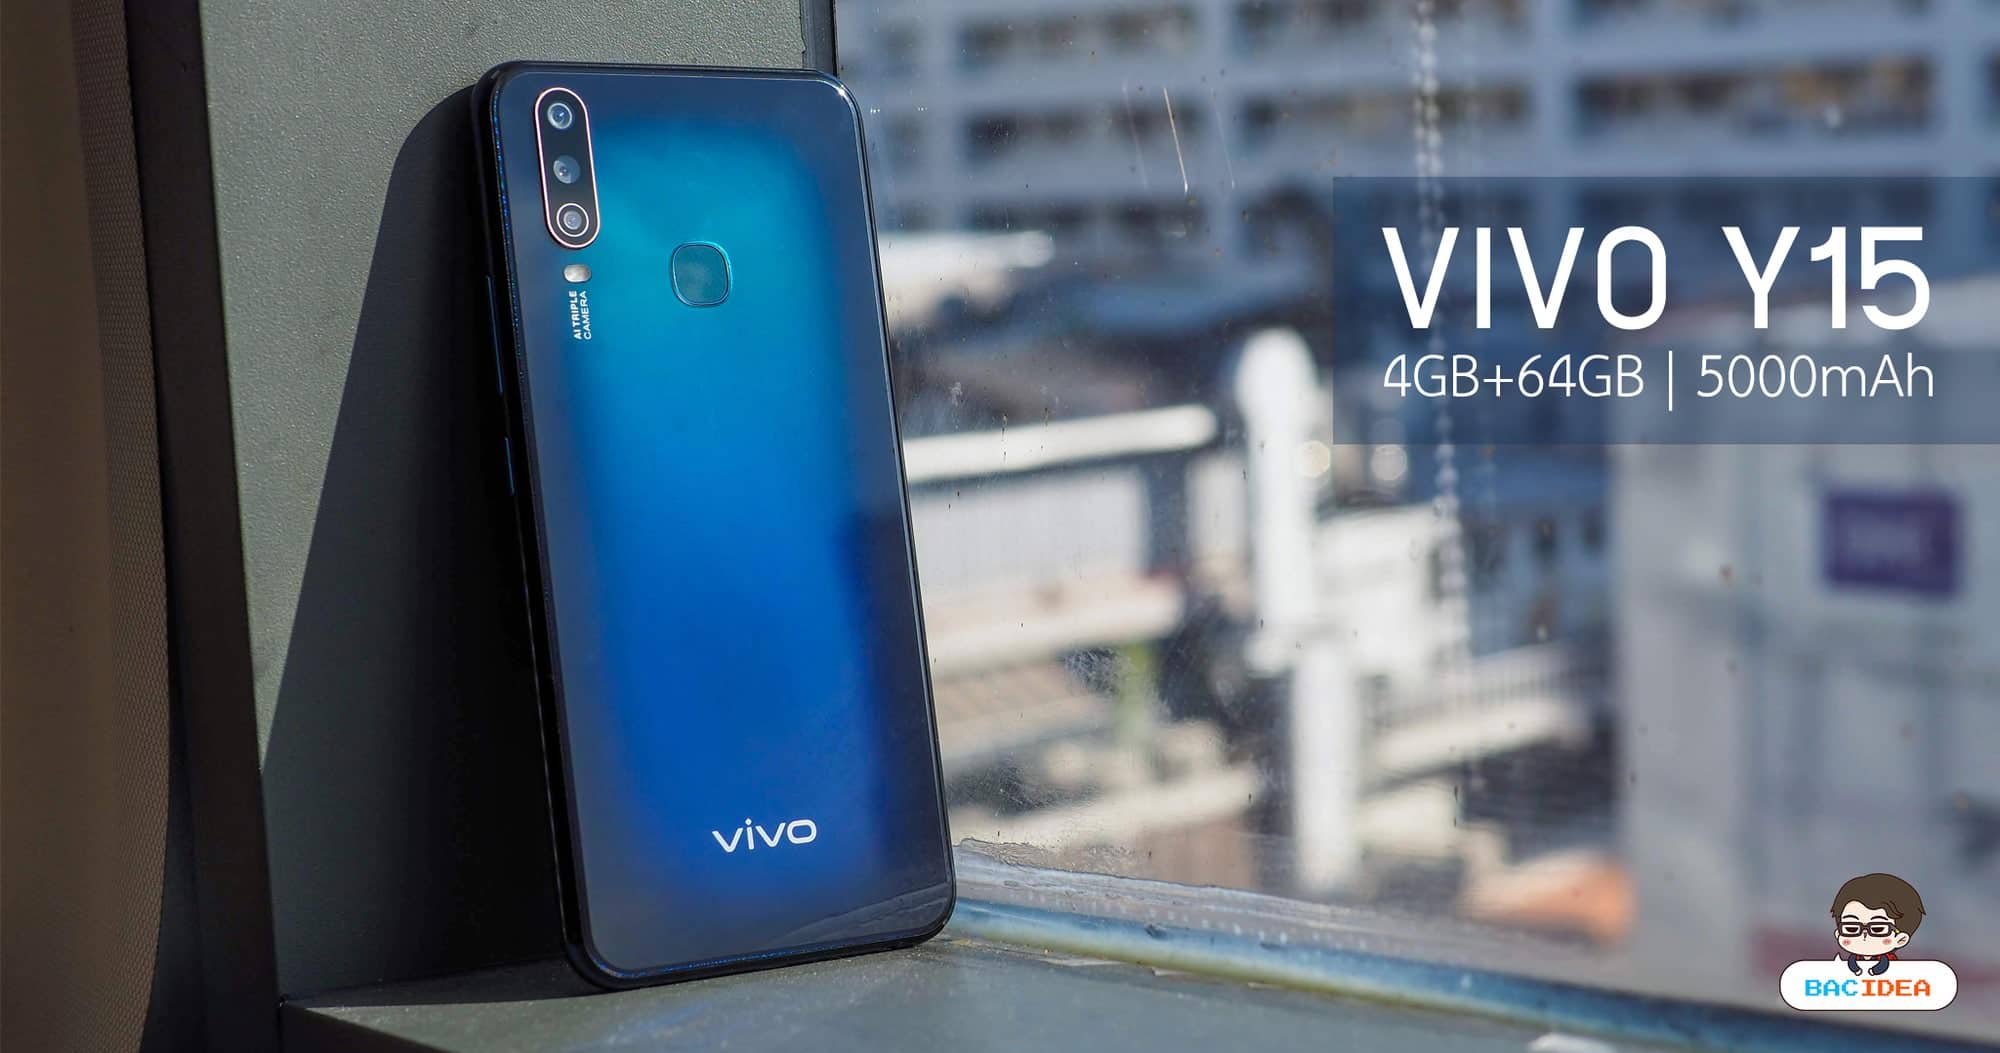 รีวิว Vivo Y15 2020 | กล้อง 3 ตัวเปิดมุมมองใหม่ แบต 5000 ใหญ่สะใจ สเปคดีไม่แพ้ใคร ในราคา 4,999 บาท 1